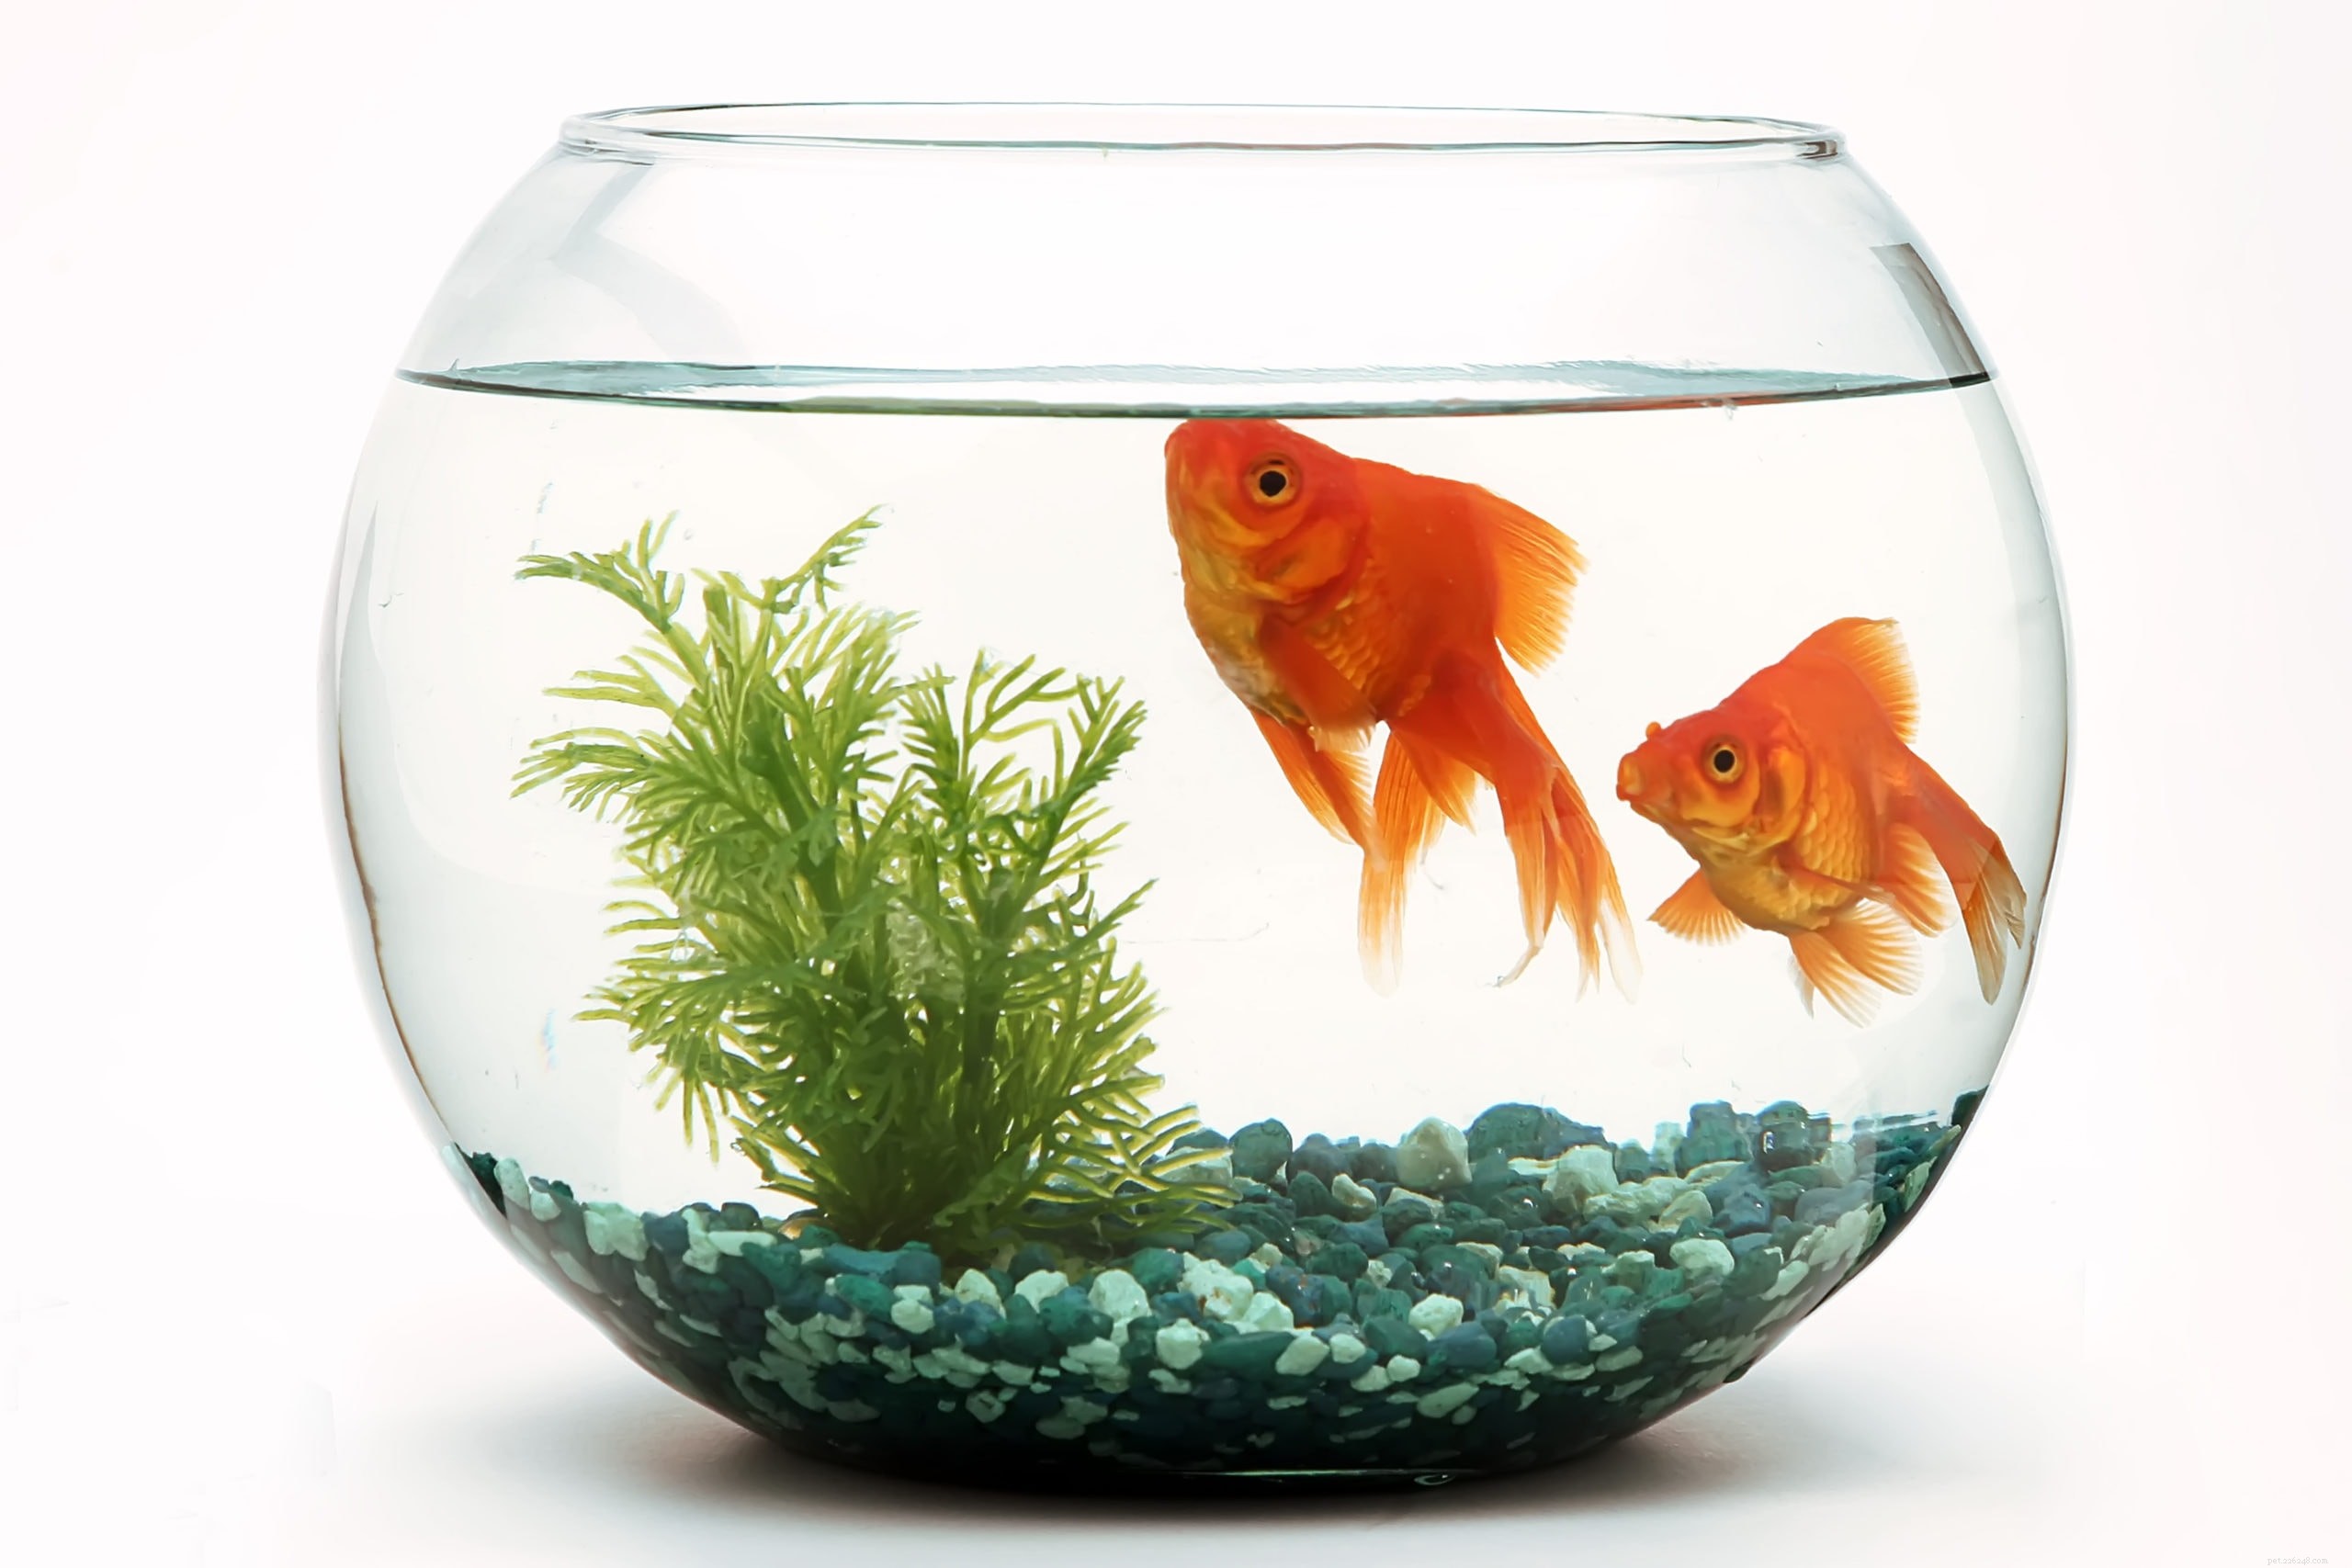 Il pesce rosso può prosperare in una ciotola? La risposta sorprendente